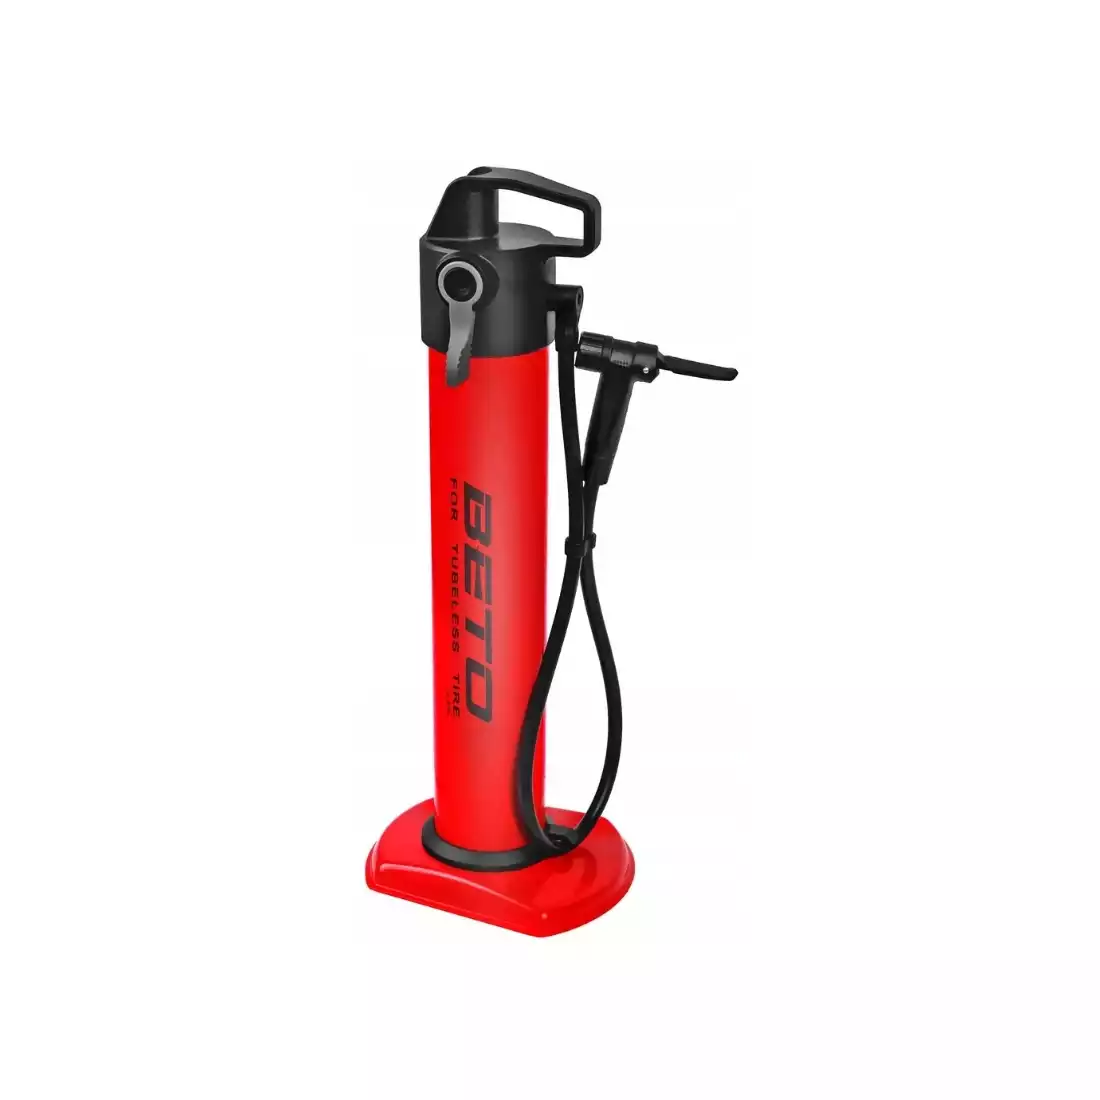 BETO CJA-001S podlahová pumpa, bezdušová kartuše 11 BAR/160 PSI, červená